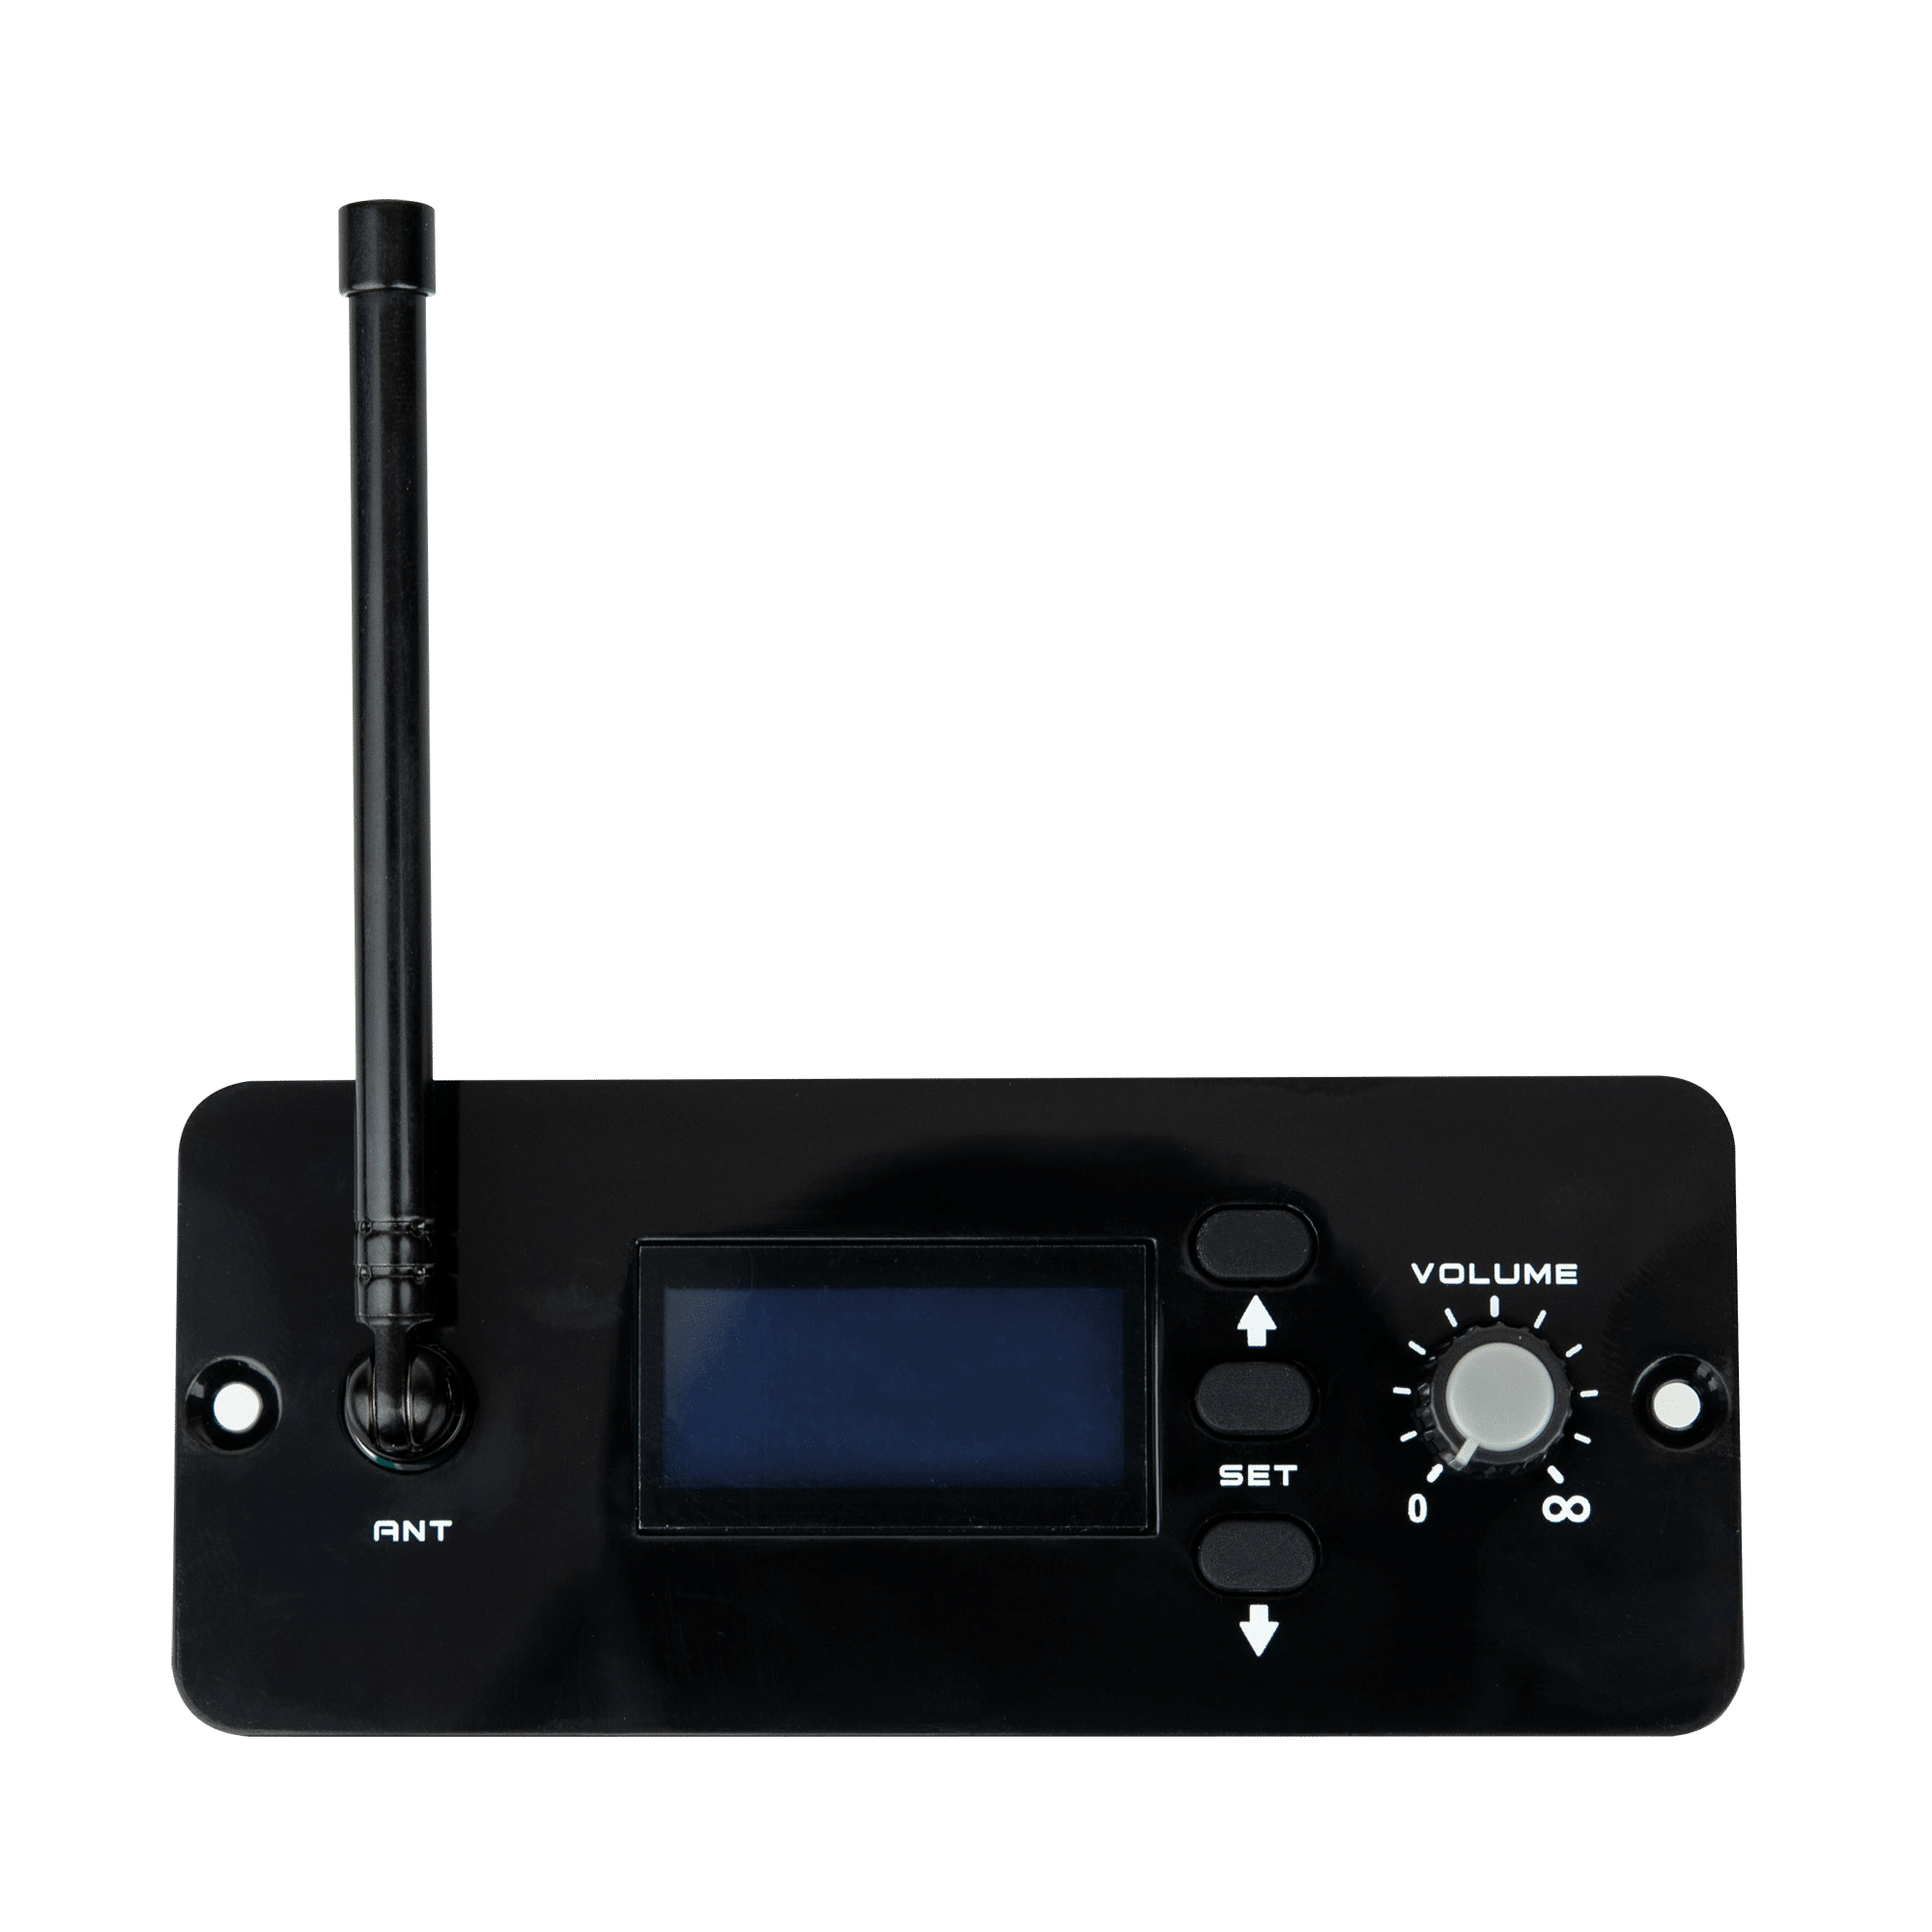 WR-10 Wireless receiver for PSS-106 - Onlinediscowinkel.nl